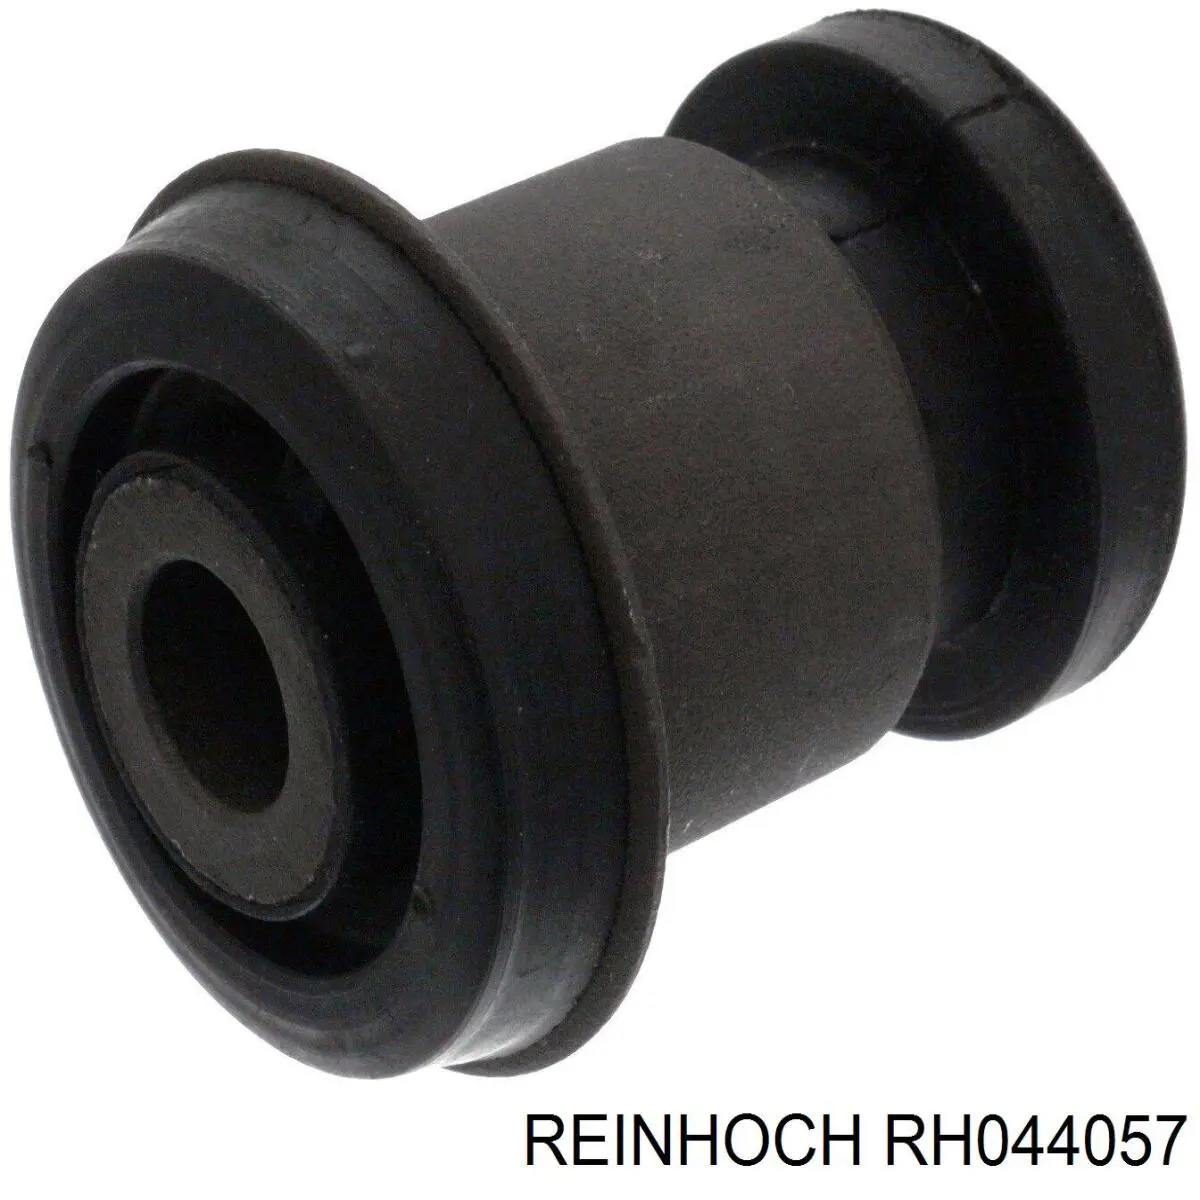 RH044057 Reinhoch рычаг передней подвески нижний левый